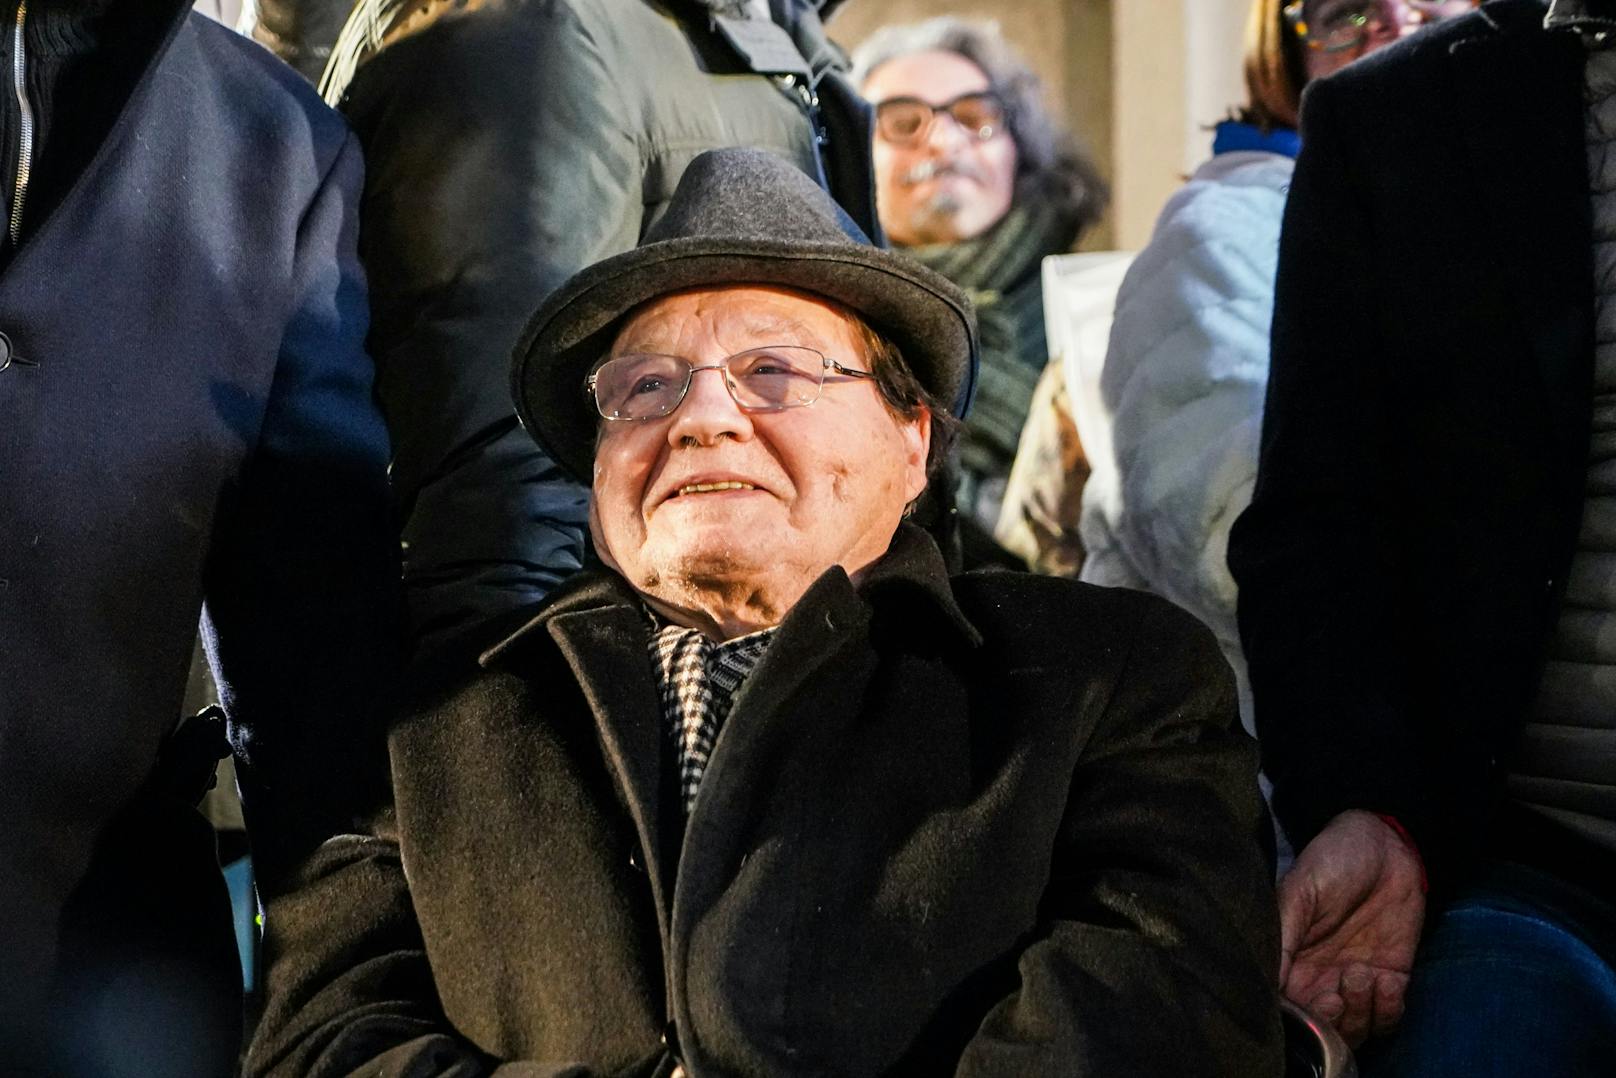 Der frühere Nobelpreisträger Luc Montagnier ist im Alter von 89 Jahren gestorben. Noch im Jänner war er Teilnehmer einer Anti-Corona-Demo in Mailand, Italien.